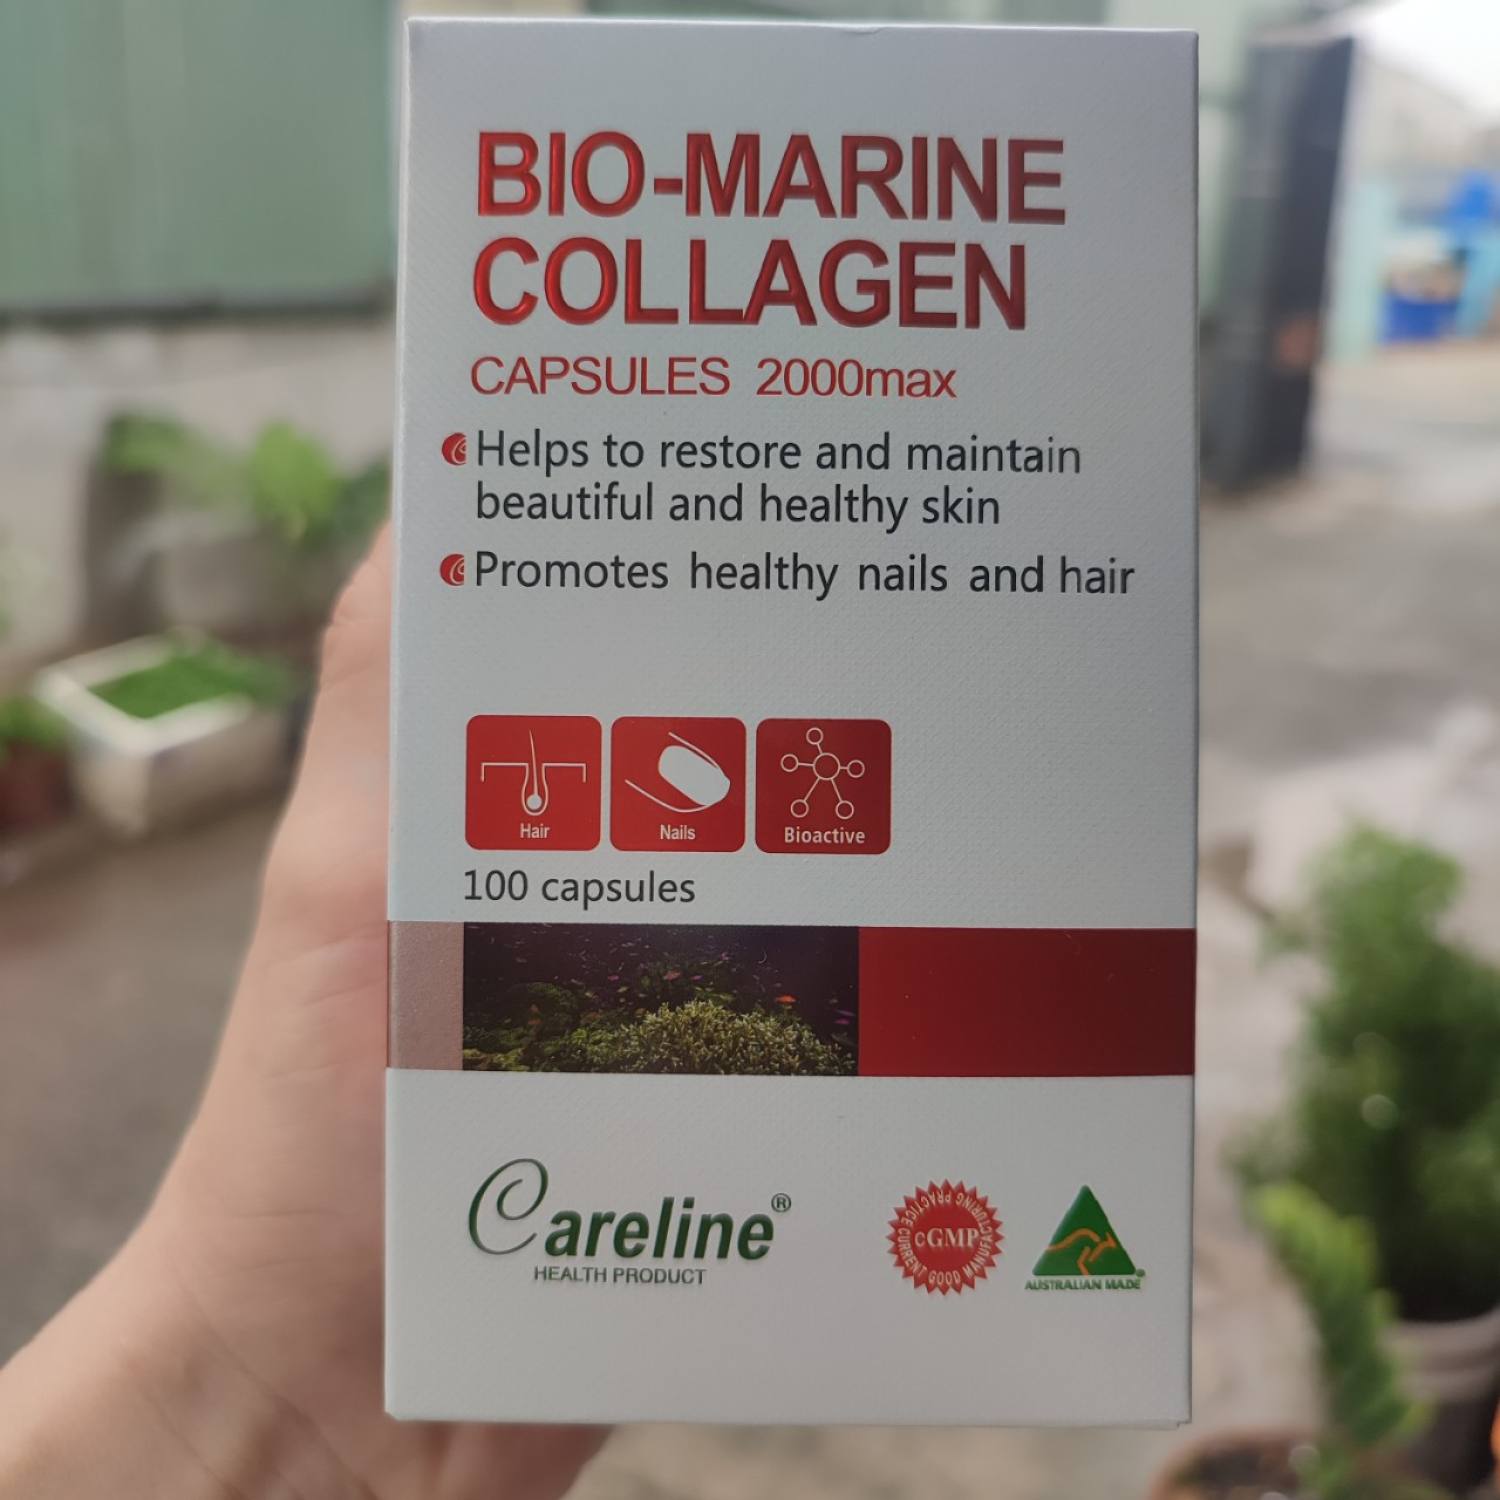 Viên Uống Careline Bio Marine Collagen 2000max 100 viên Hỗ Trợ Làm Đẹp Da